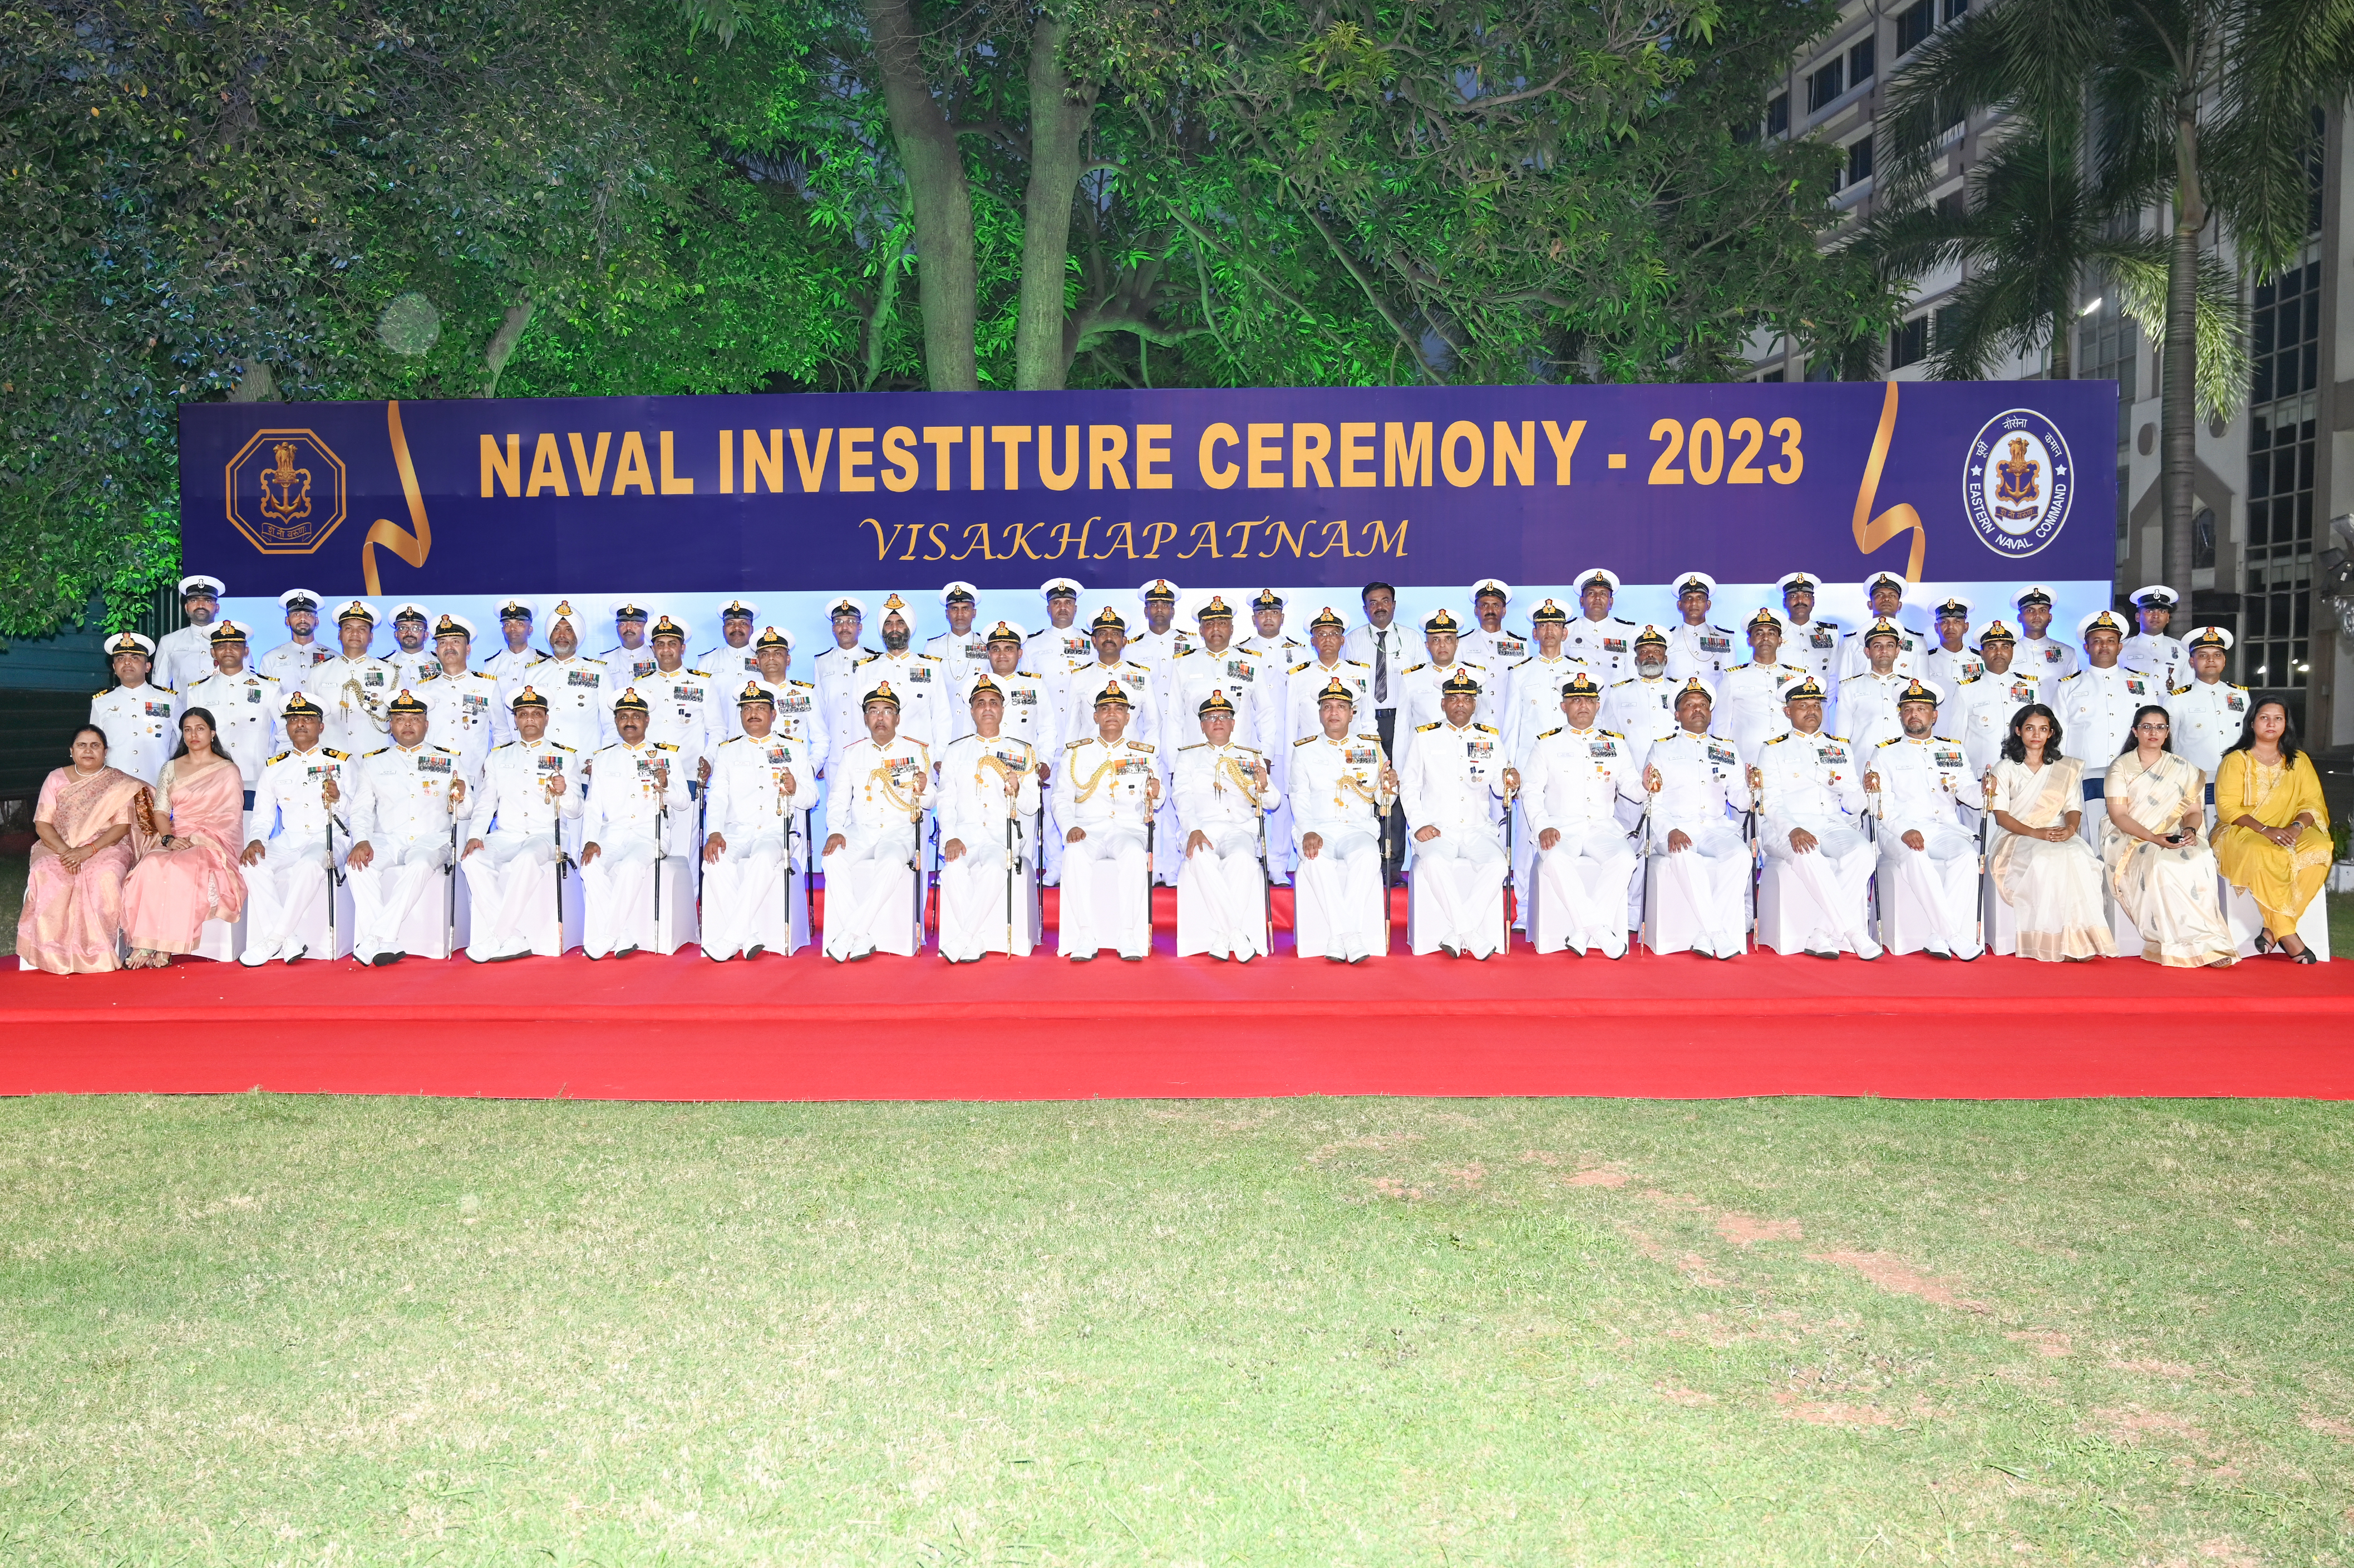 नौसेना प्रमुख एडमिरल आर हरि कुमार ने नौसेना अलंकरण समारोह के दौरान शौर्य और विशिष्ट सेवा पदक किया प्रदान